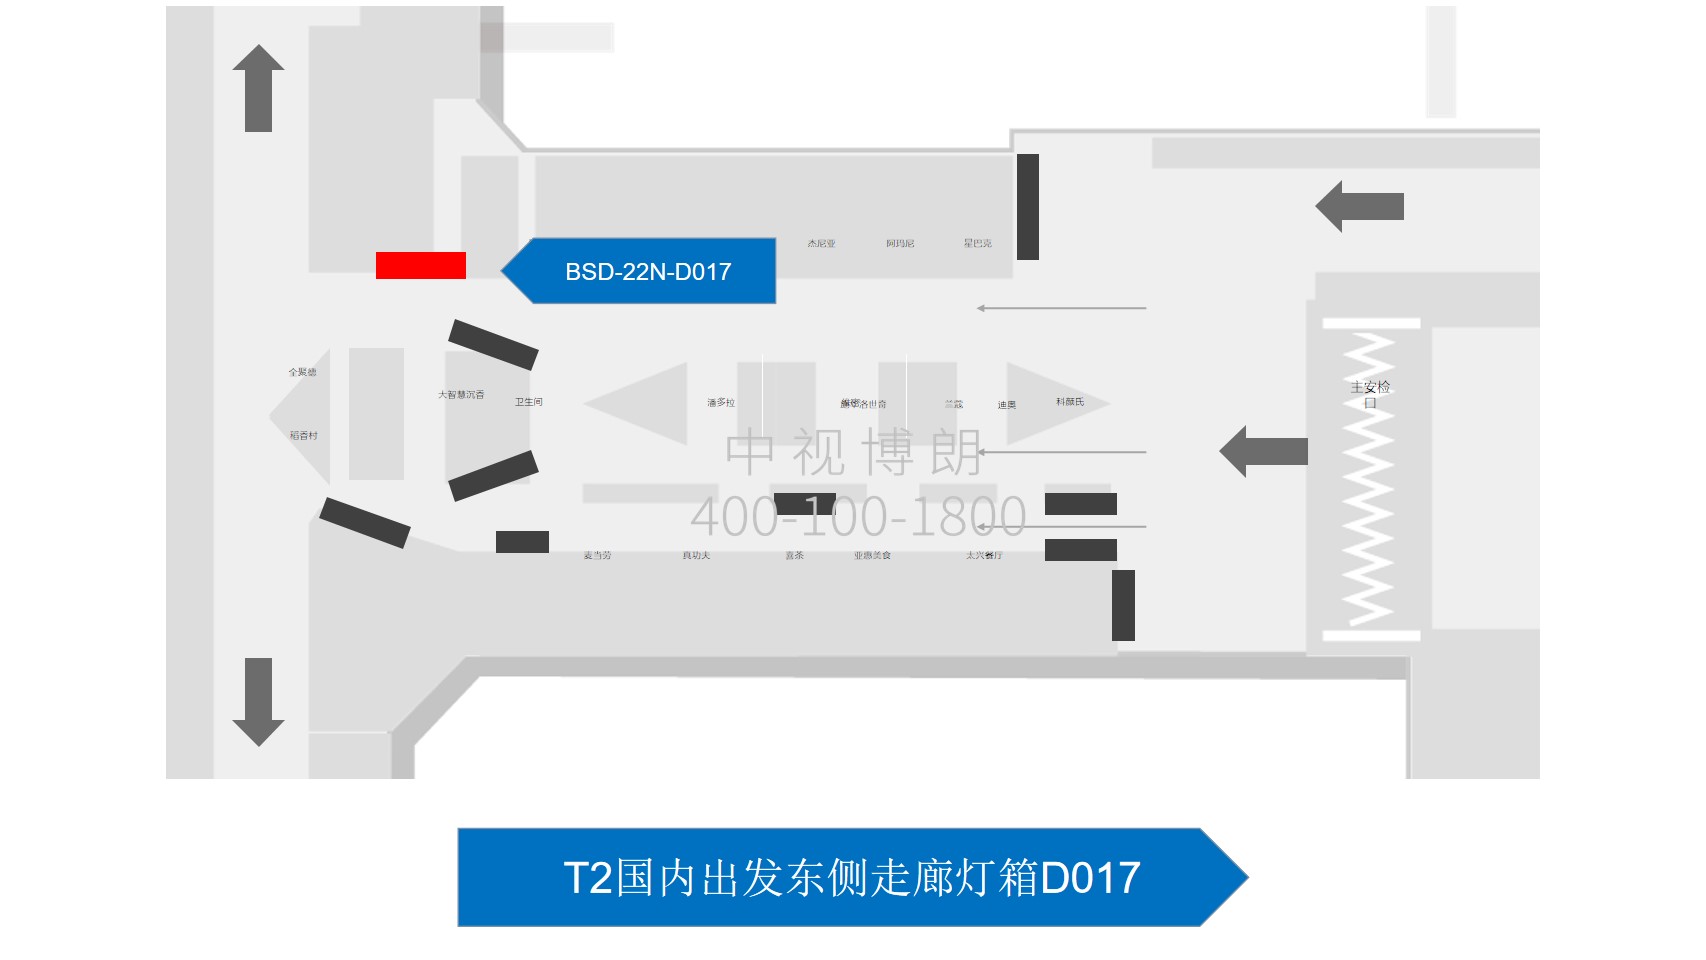 北京首都机场广告-T2国内出发东侧走廊灯箱D017位置图